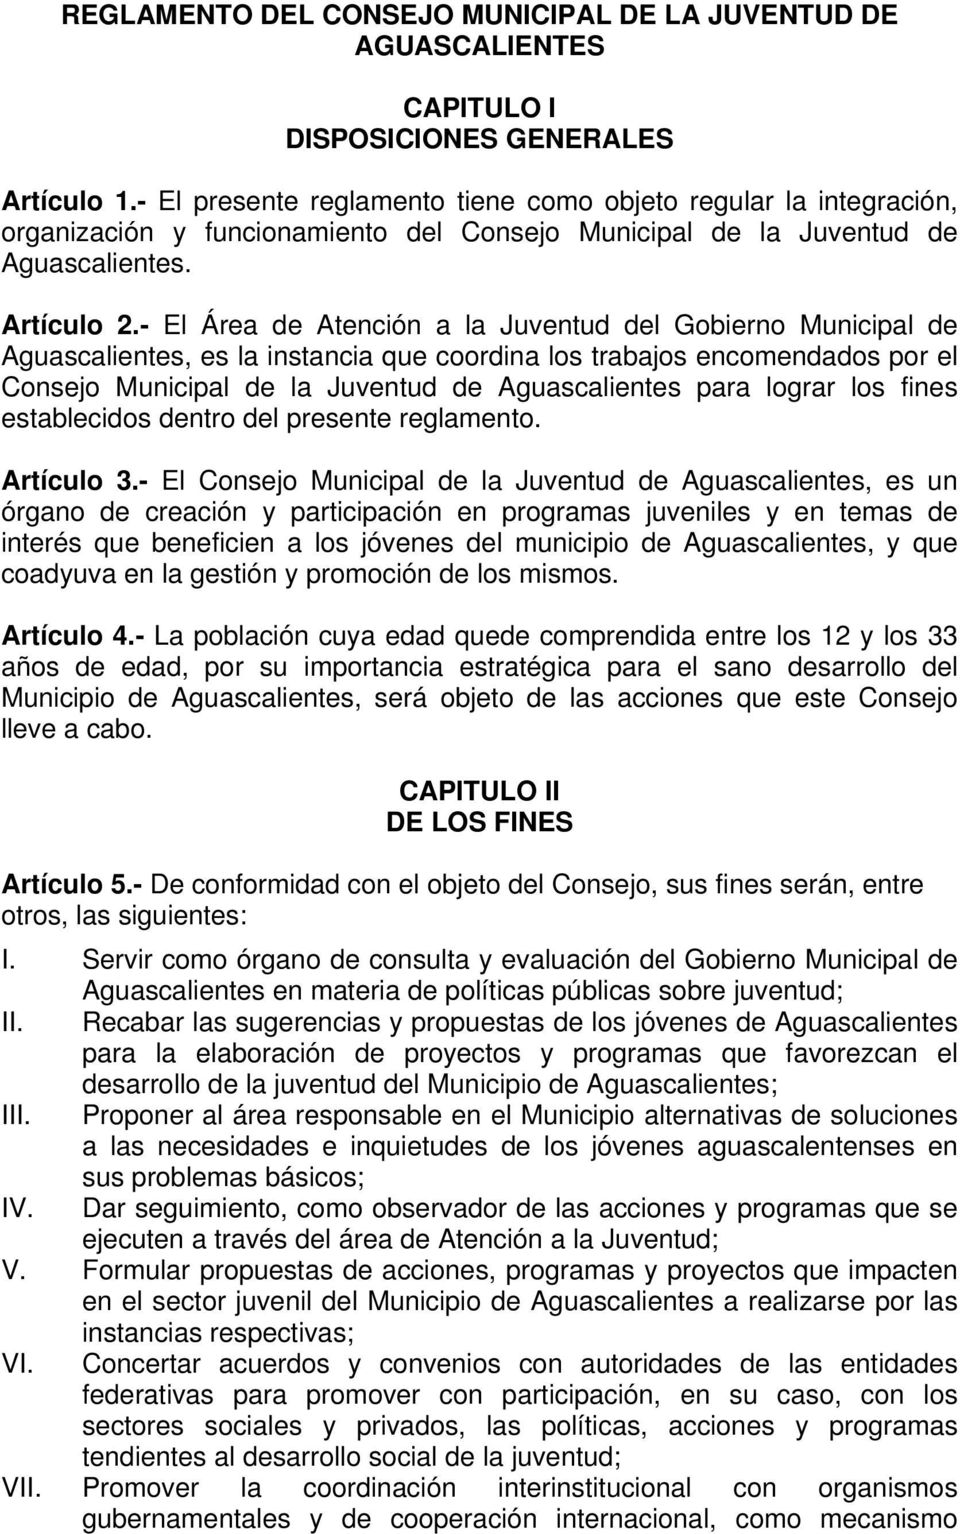 - El Área de Atención a la Juventud del Gobierno Municipal de Aguascalientes, es la instancia que coordina los trabajos encomendados por el Consejo Municipal de la Juventud de Aguascalientes para